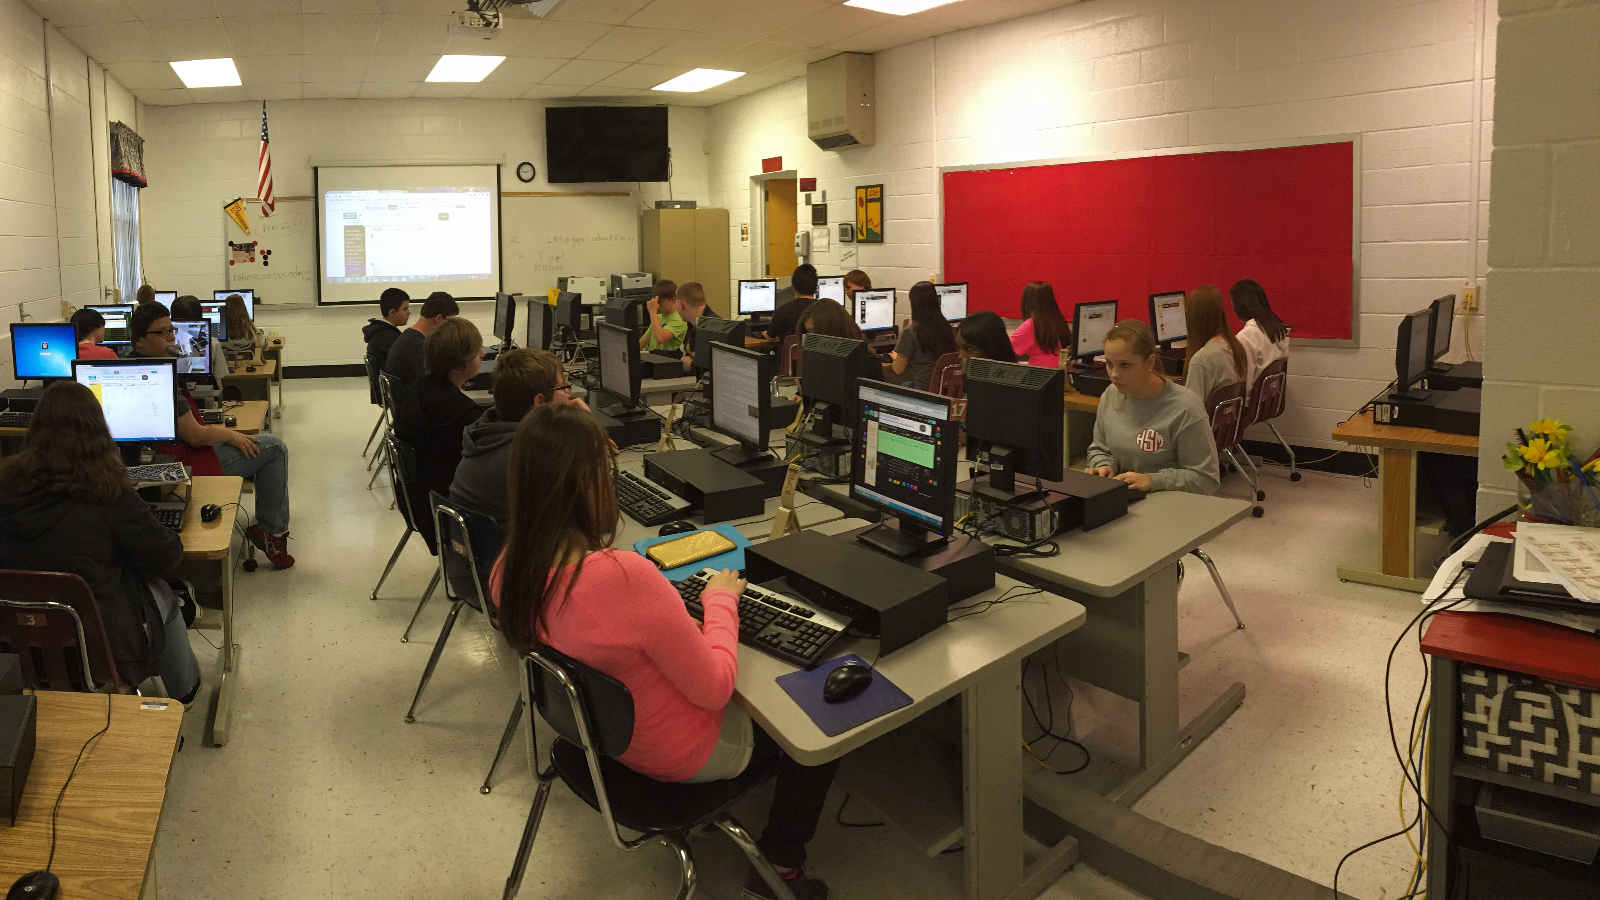 Schüler in Klassenraum vor Computern